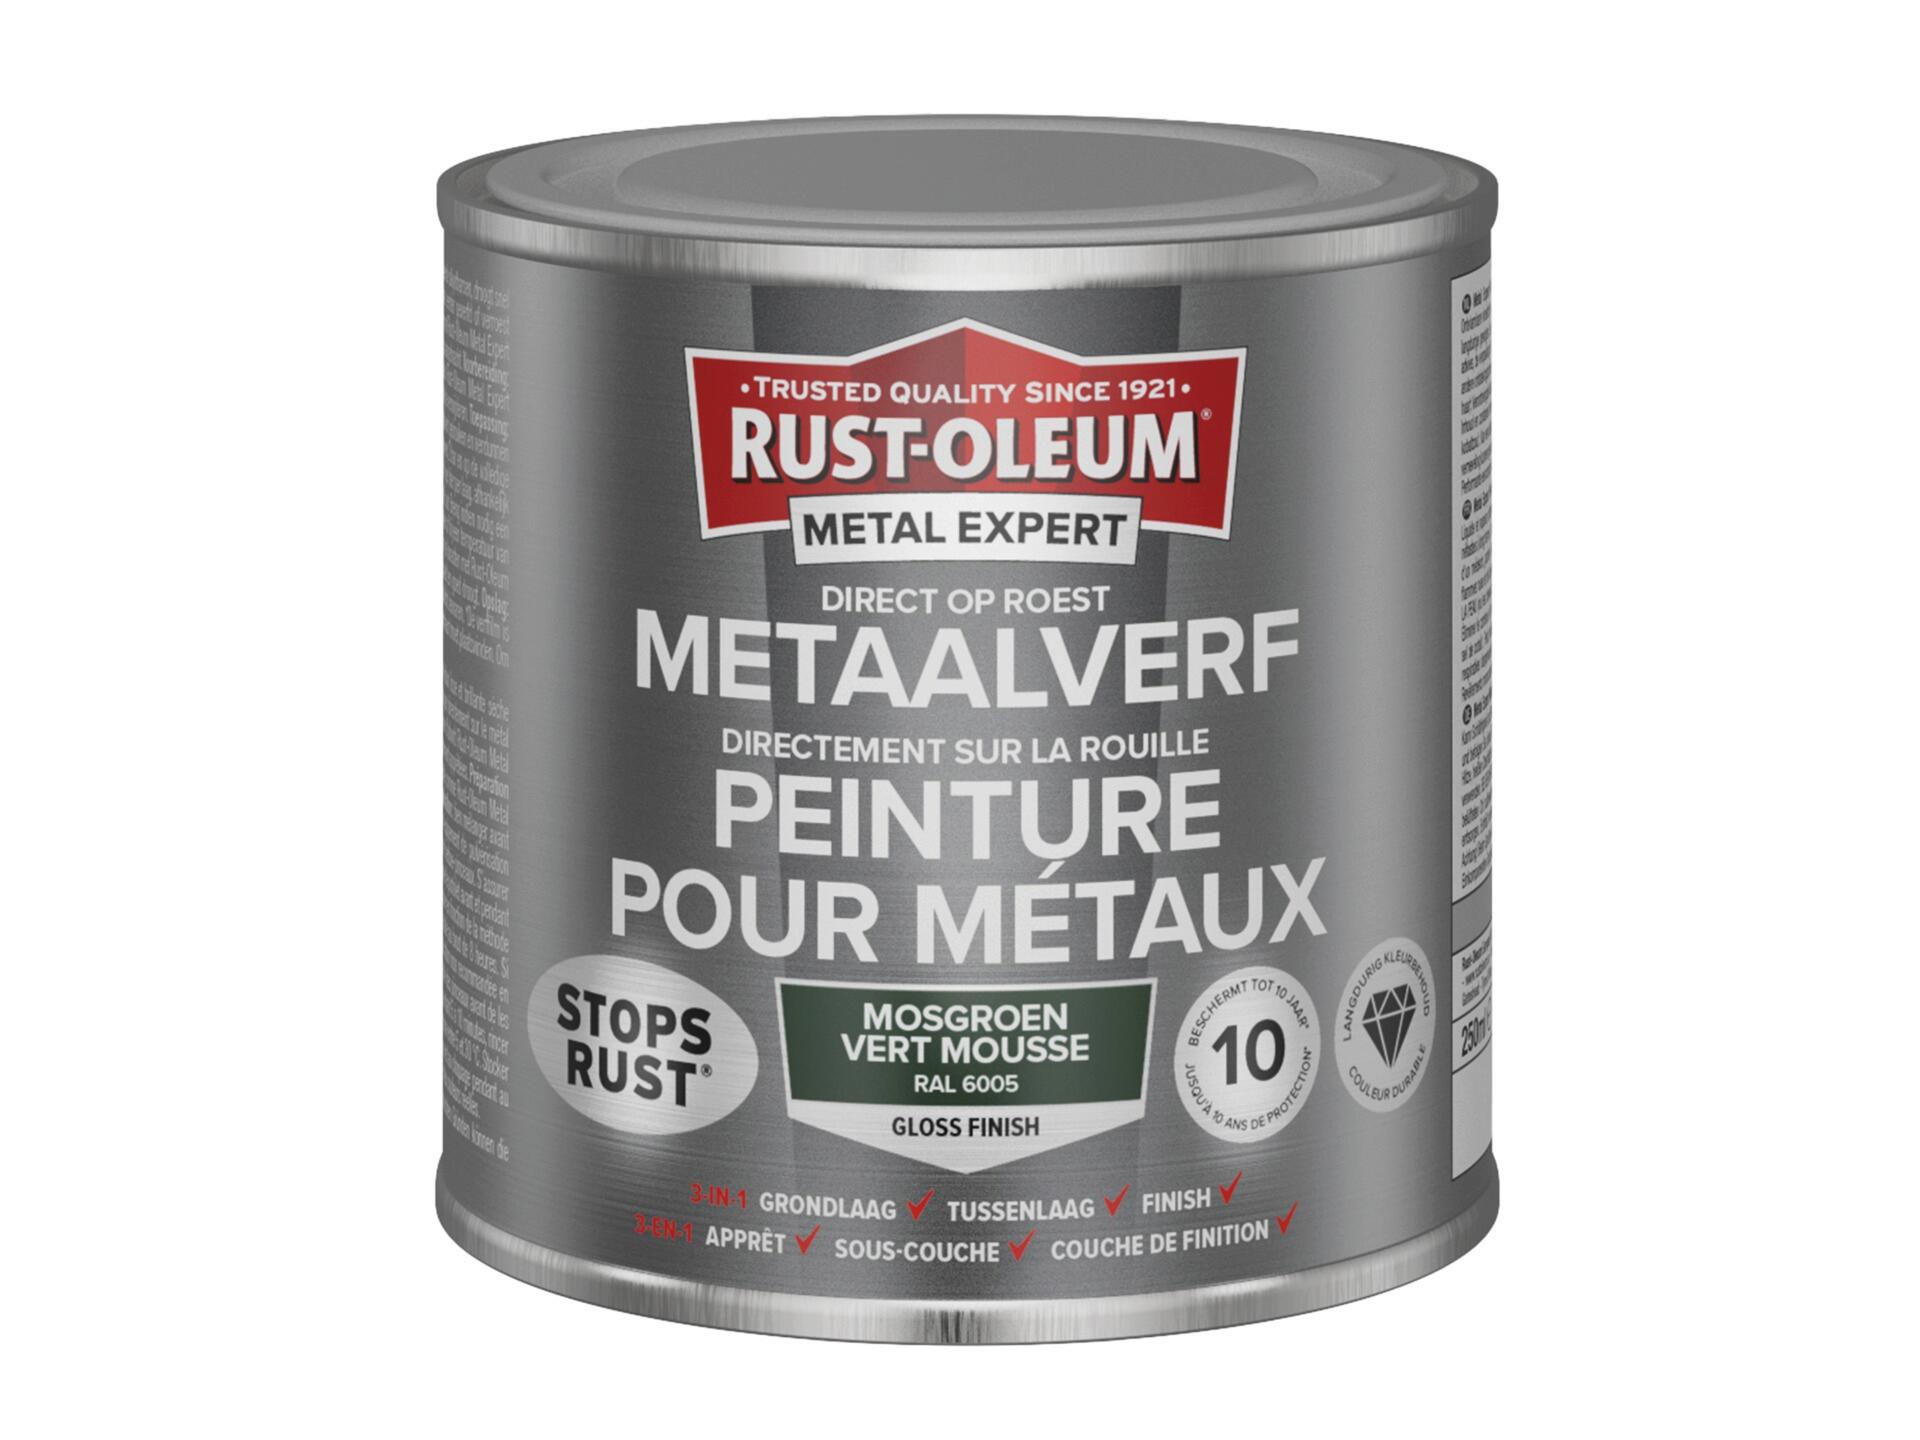 Rust-oleum Metal Expert peinture pour métaux brillant 250ml vert mousse